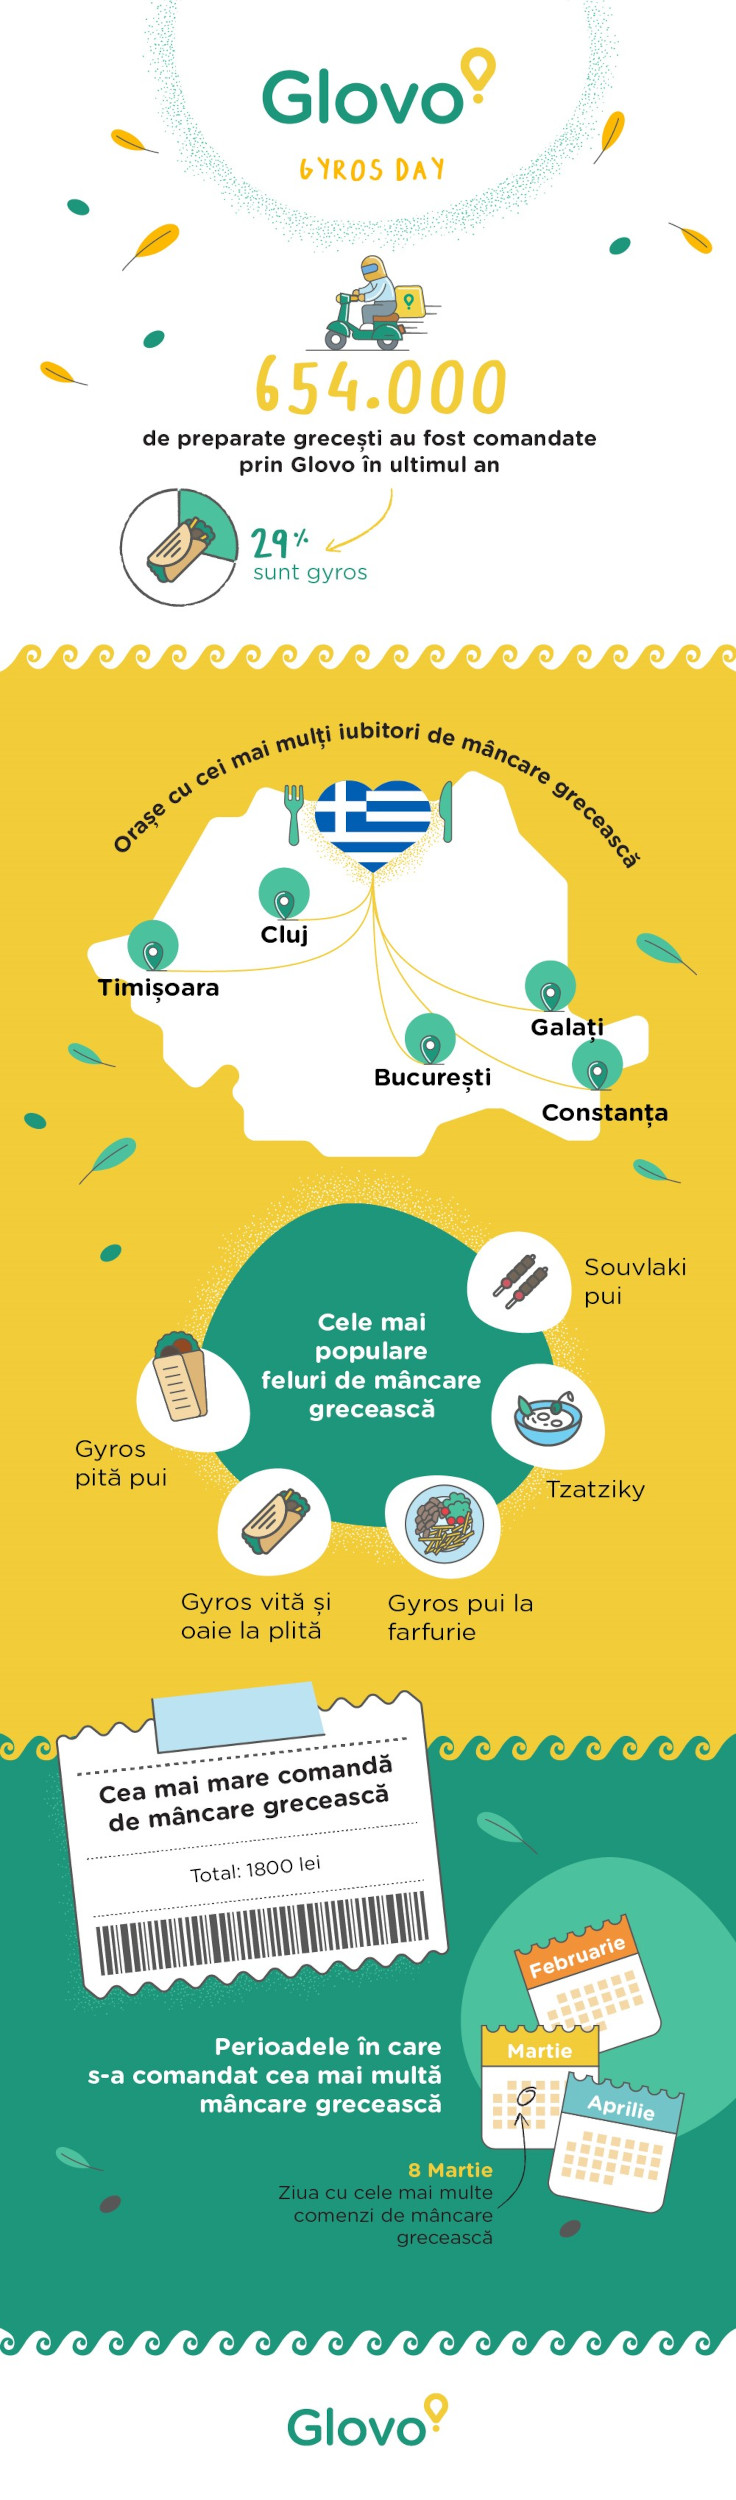 Românii sunt fani mâncare grecească: au cumpărat peste 654.000 de preparate grecești în ultimul an prin intermediul aplicației Glovo